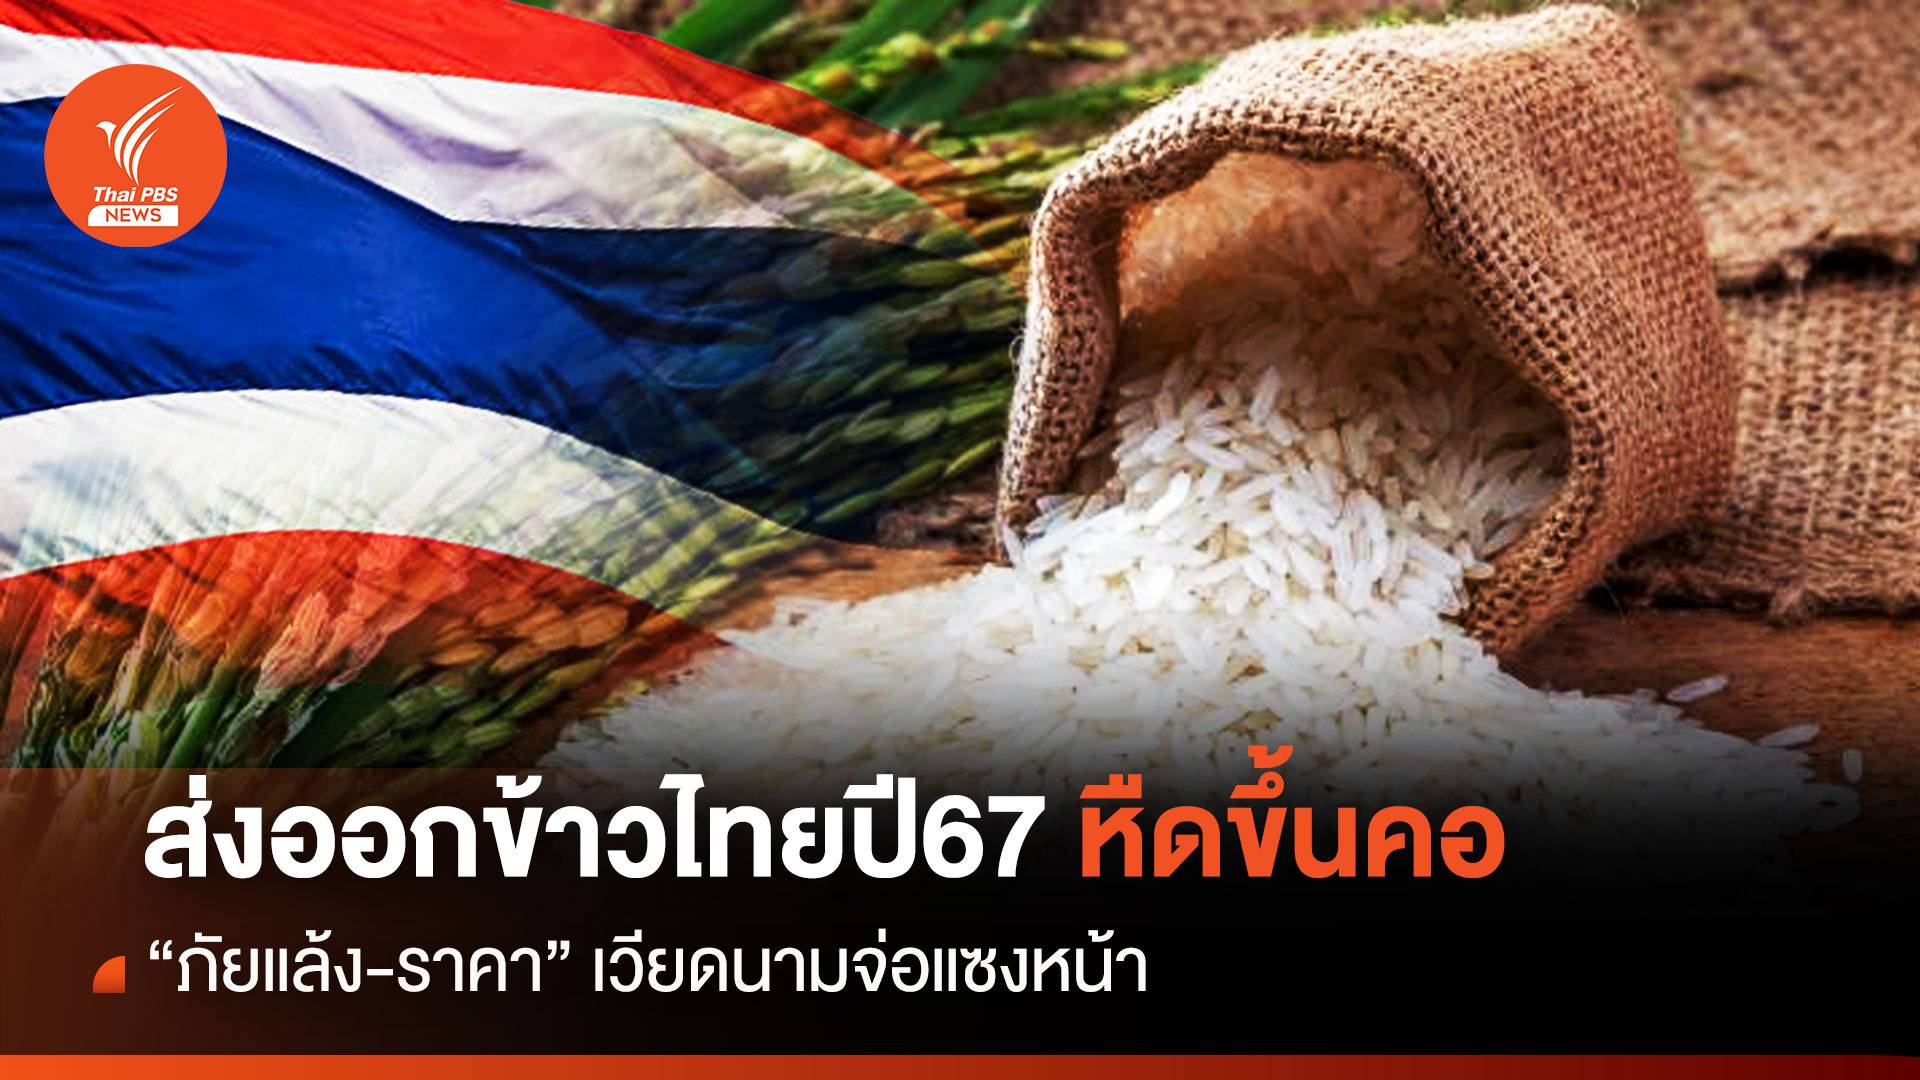 ส่งออกข้าวไทยปี 2567 หืดขึ้นคอ “ภัยแล้ง-ราคา” เวียดนามจ่อแซงหน้า